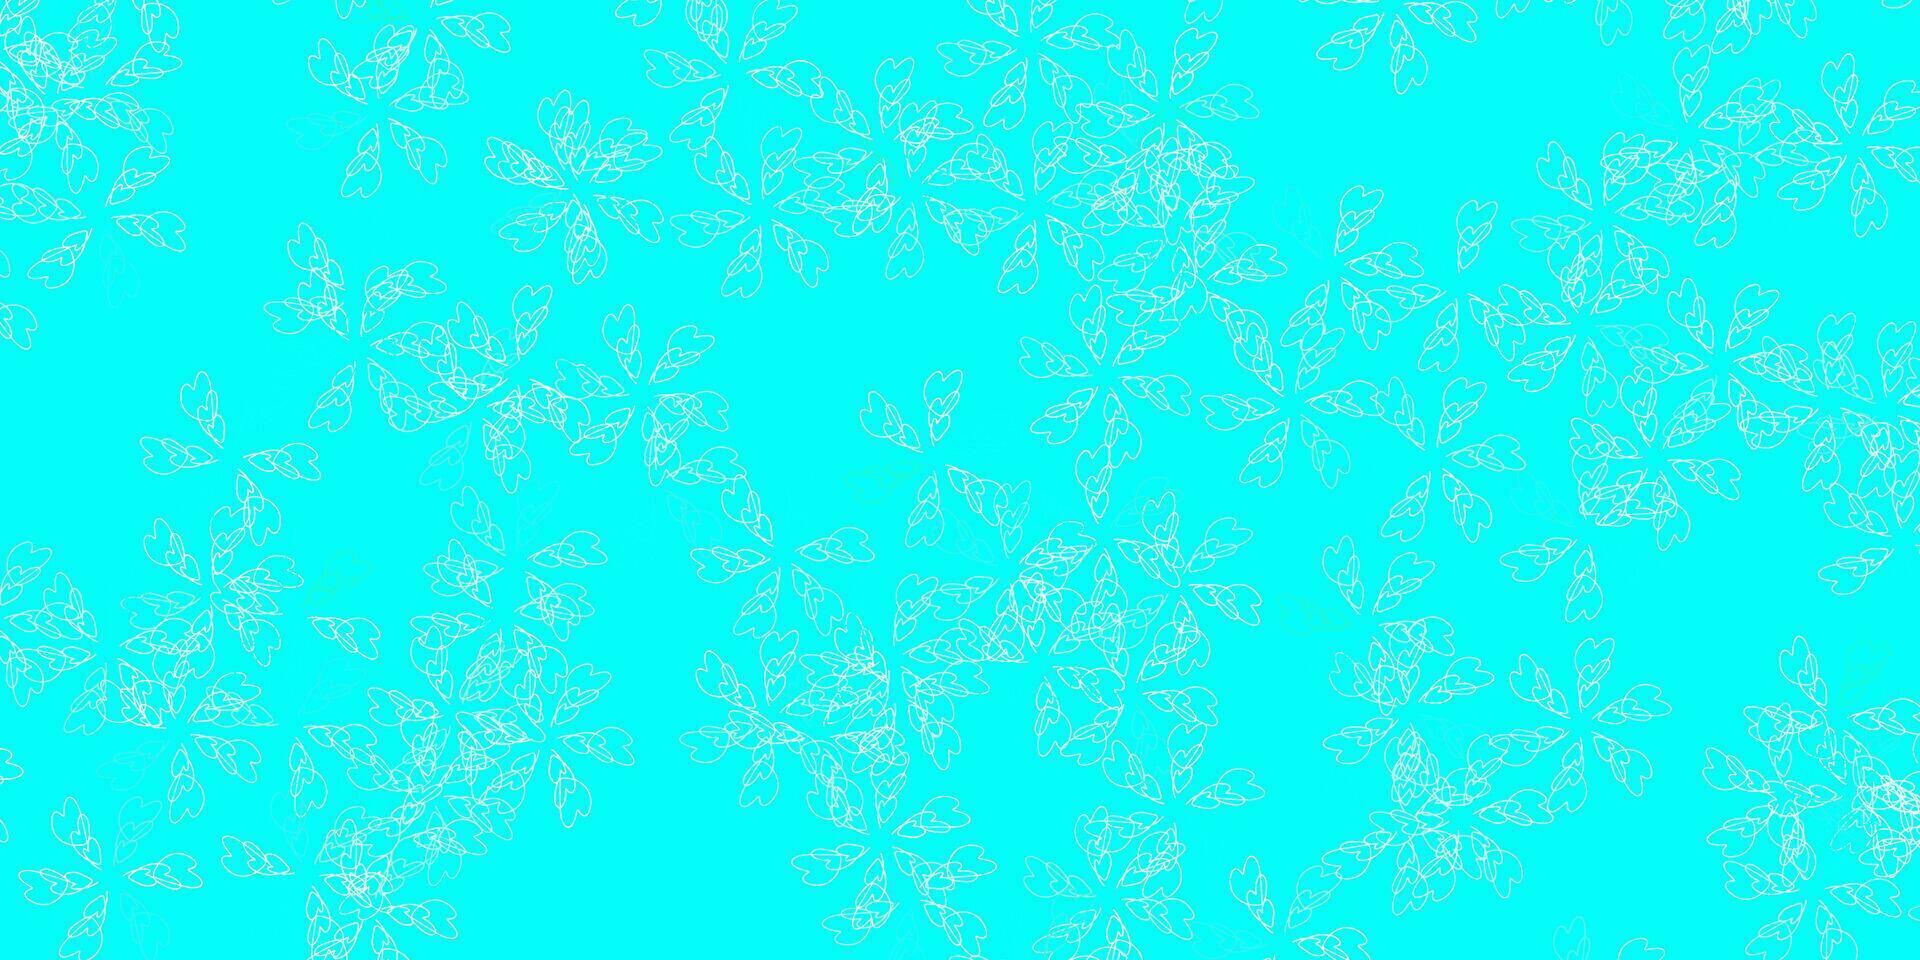 patrón abstracto de vector azul claro, verde con hojas.